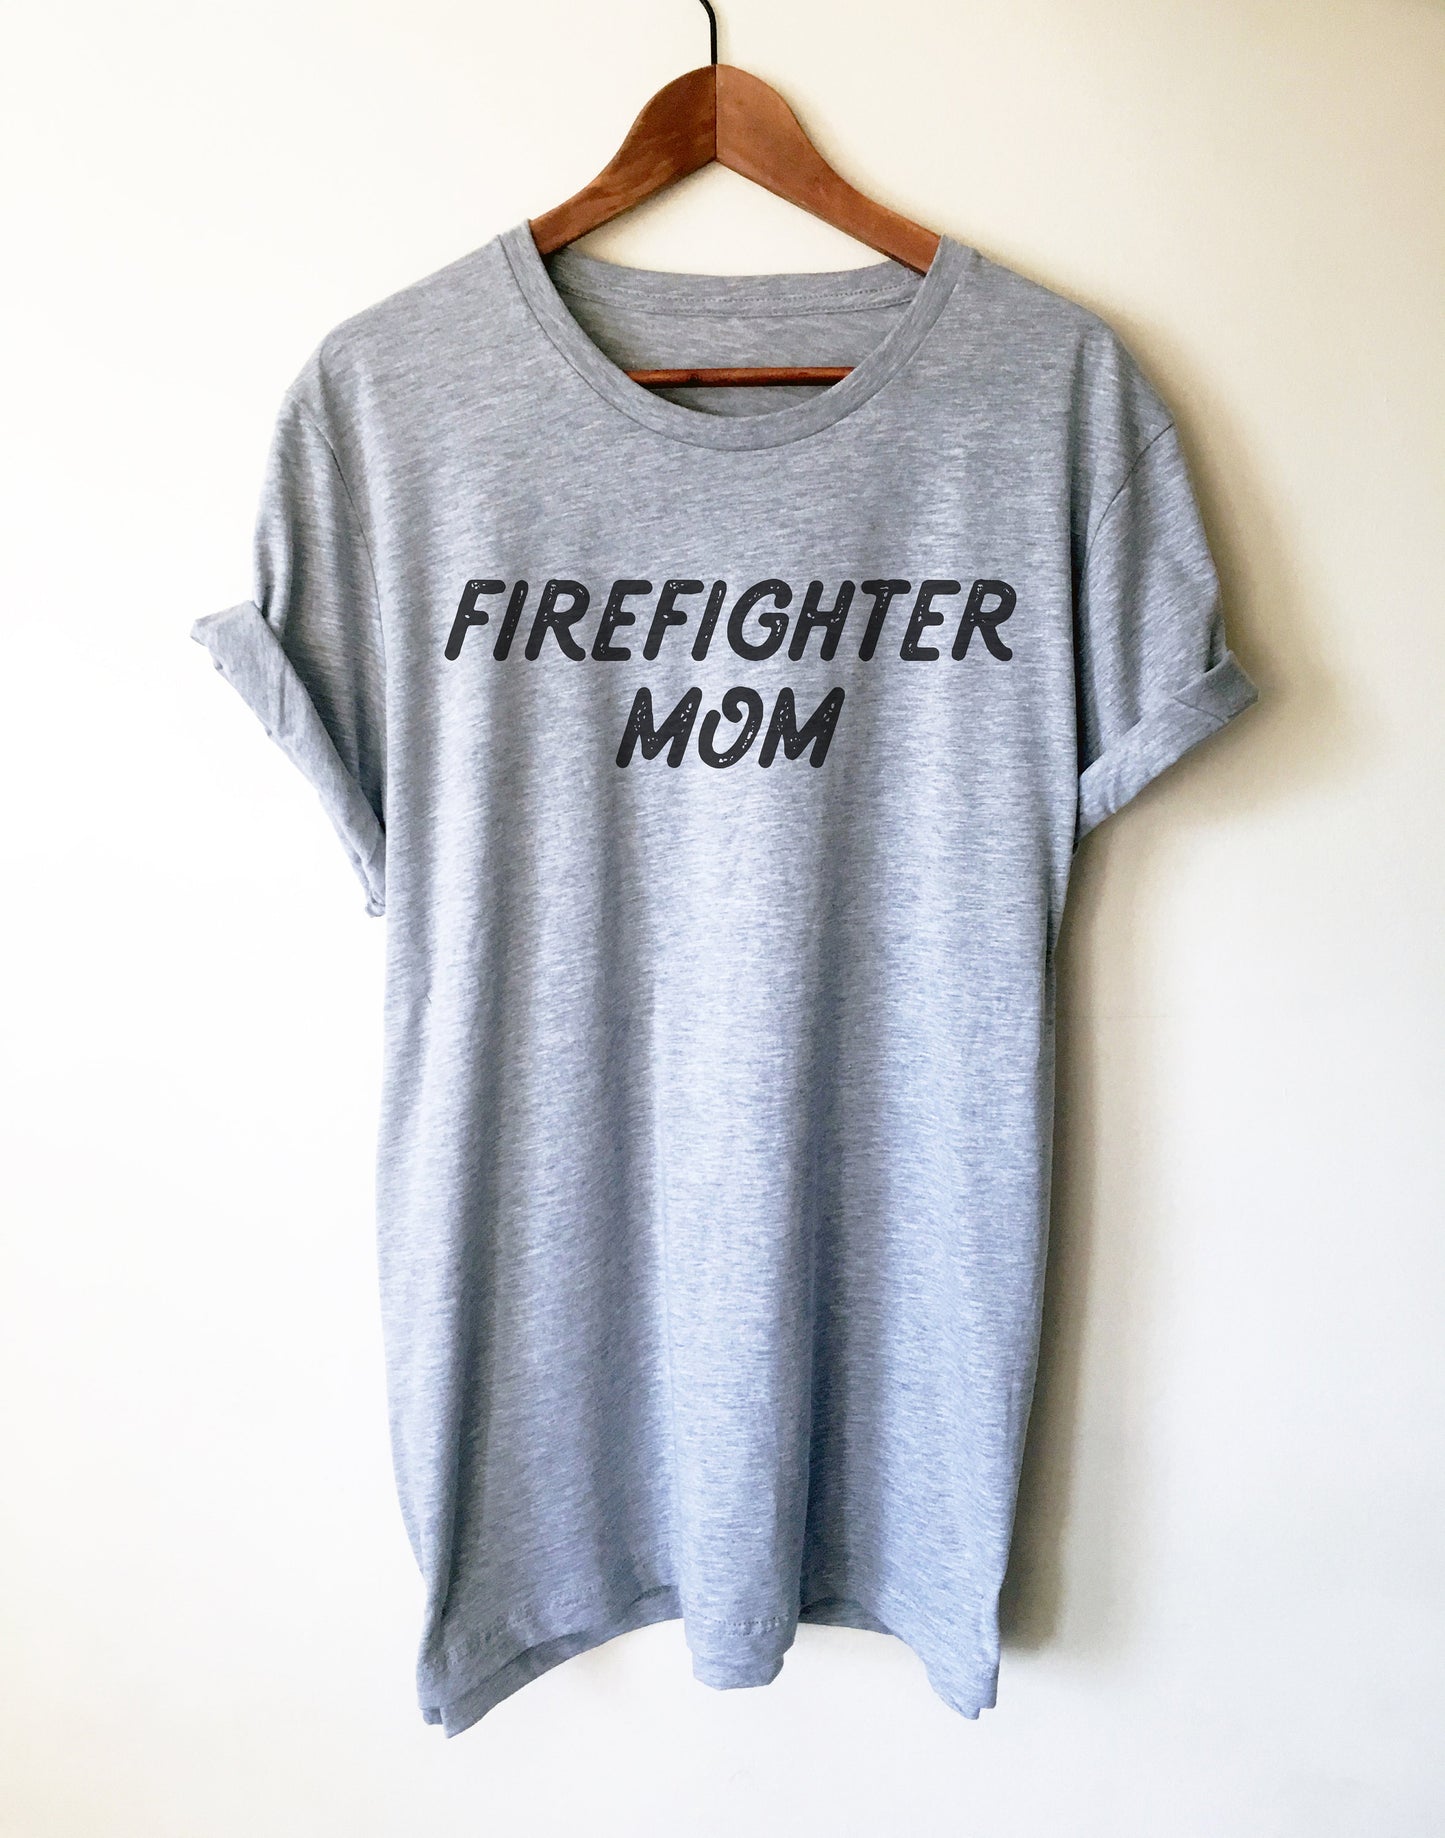 Firefighter Mom Unisex Shirt - Firefighter Mom Gift, Firefighter Mom Shirt, Firefighter Apparel, Firefighter Family, Fireman Shirt